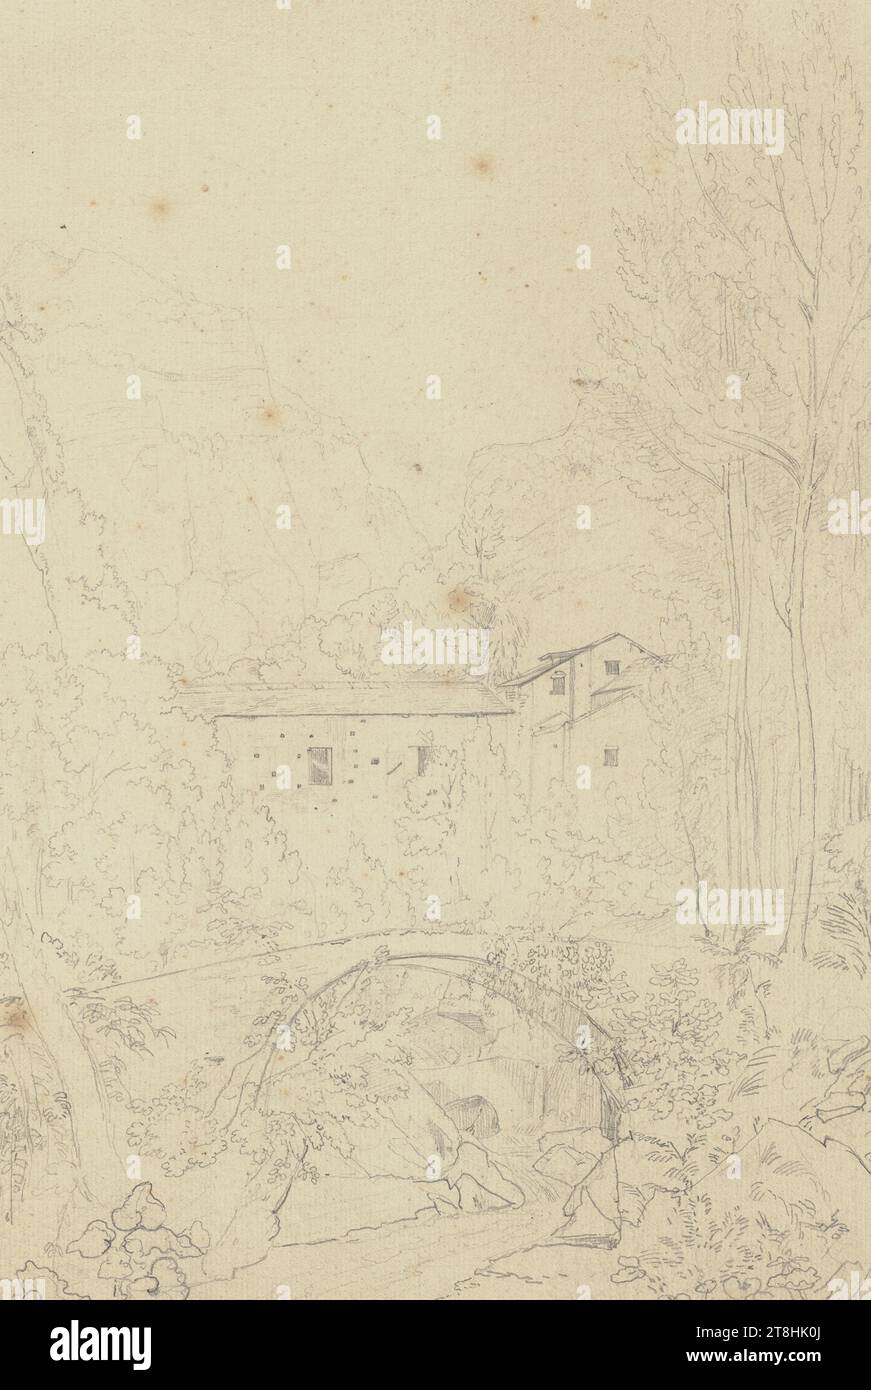 JOHANNES THOMAS, paysage près d'Amalfi, juillet 1823, feuille, 335 x 222 mm, crayon sur papier, paysage près d'Amalfi, JOHANNES THOMAS, 19e SIÈCLE, DESSIN, crayon sur papier, MÉLANGE GRAPHITE-ARGILE, PAPIER, DESSIN AU CRAYON, ALLEMAND, ÉTUDE DE PAYSAGE, ÉTUDE DE VOYAGE, daté et inscrit en bas à droite, au crayon, Amalfi juillet 23 Banque D'Images